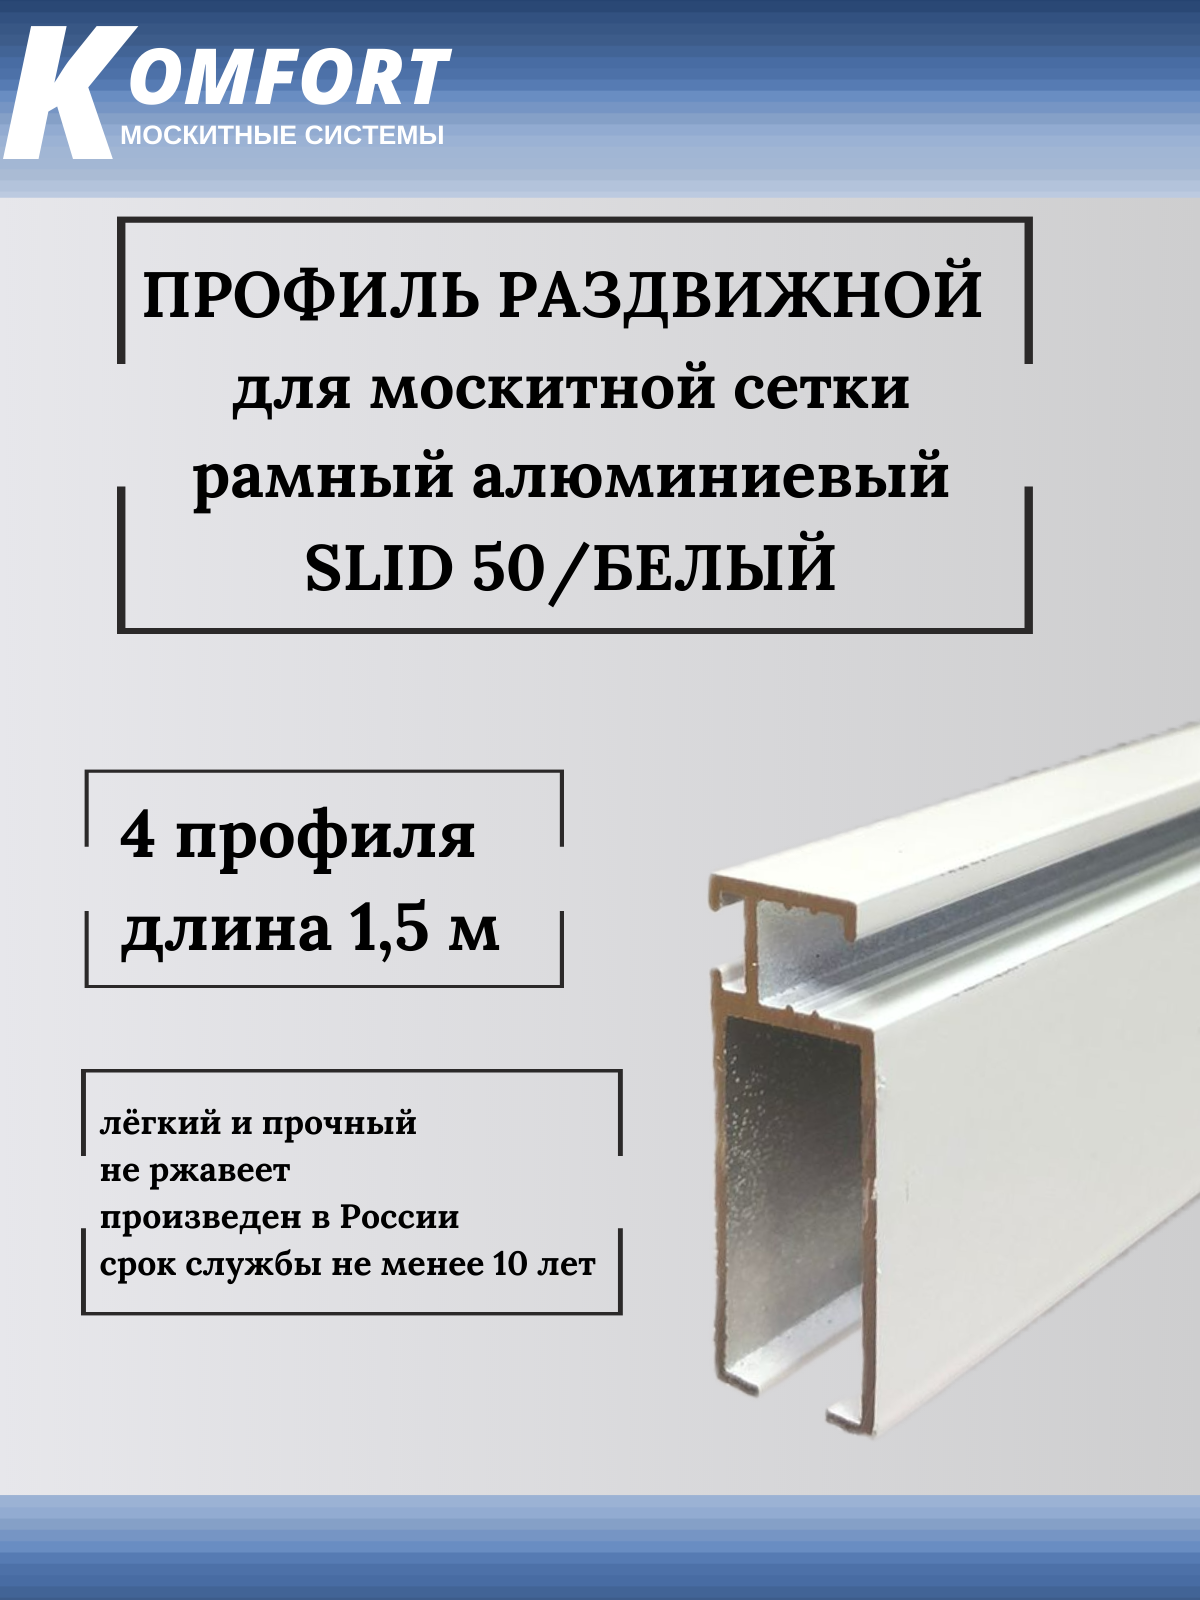 Профиль для москитной сетки рамный раздвижной SLID 50 белый 15 м 4 шт